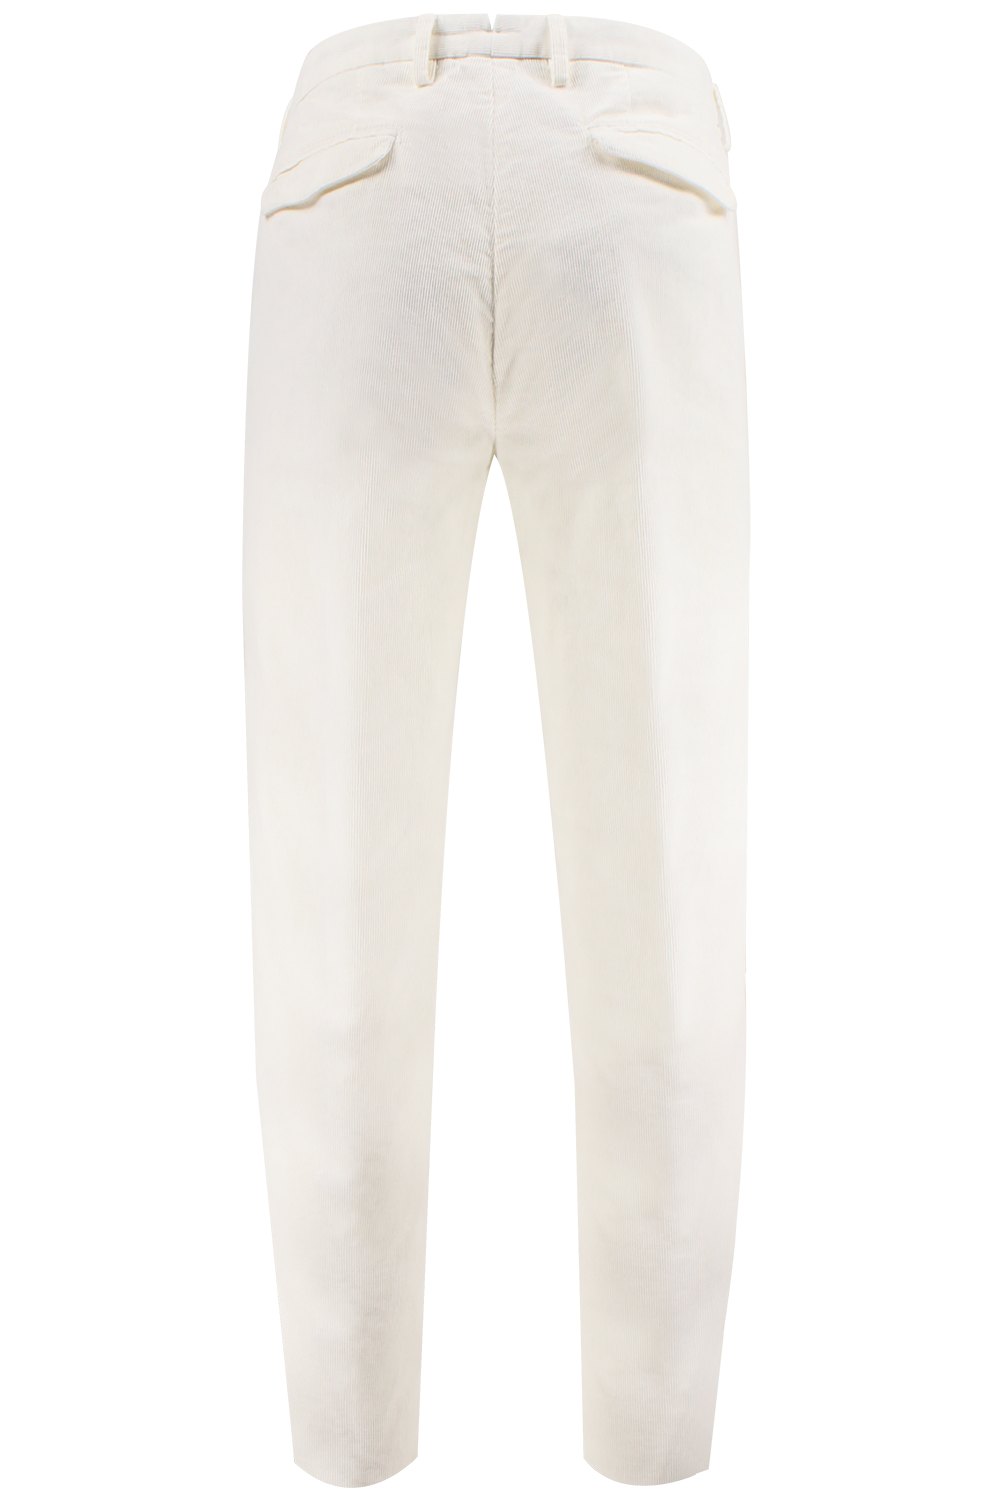 Pantalone con pince in velluto millerighe bianco retro